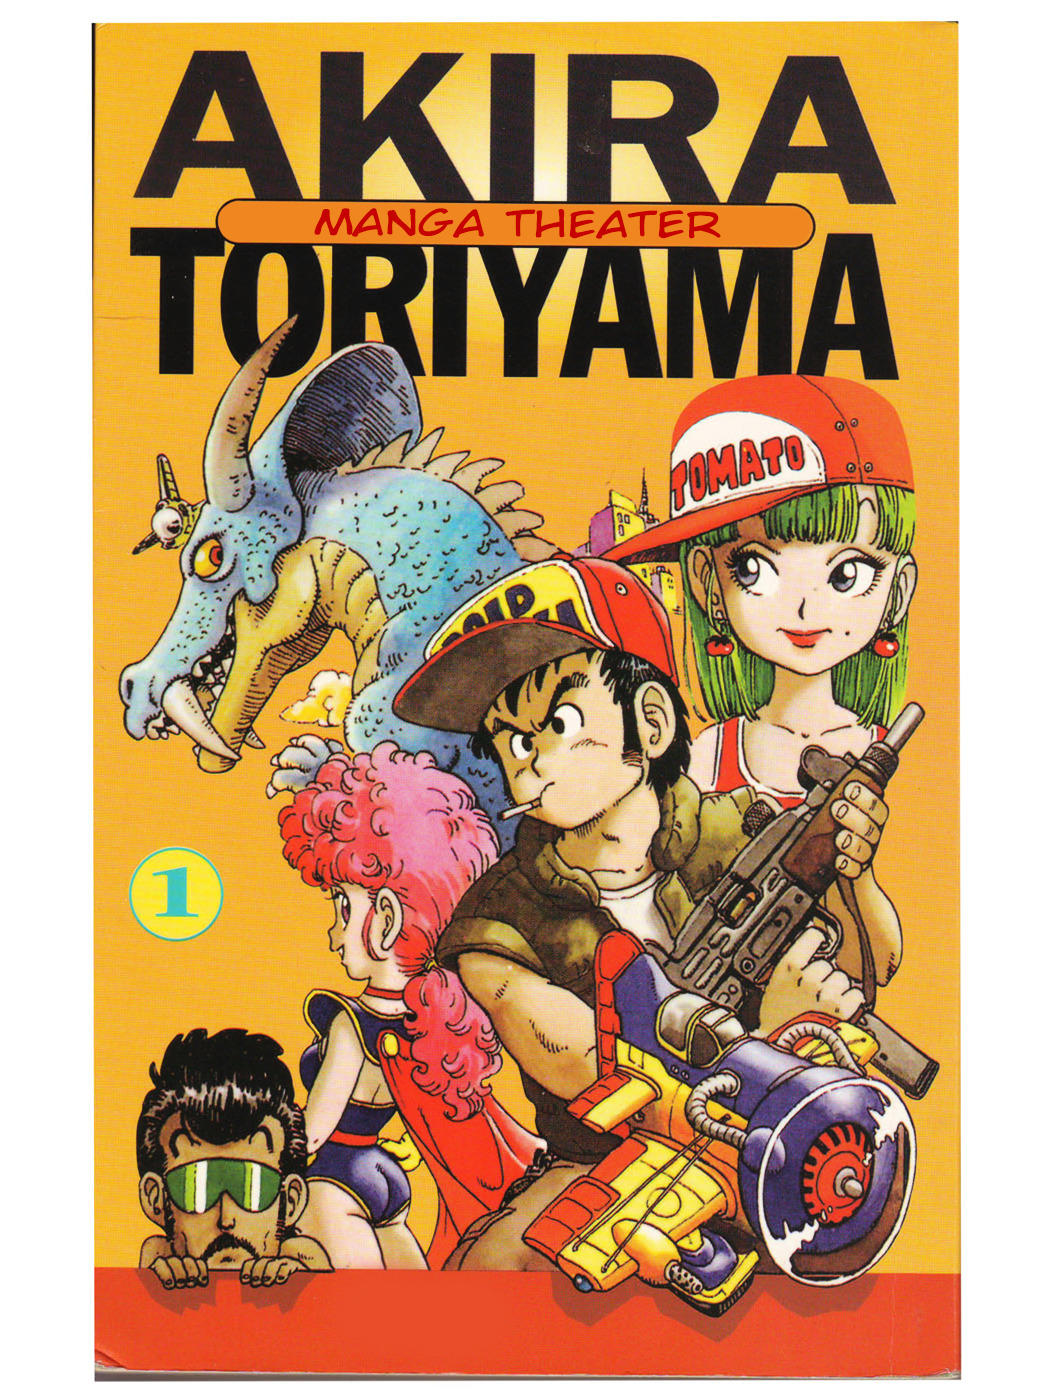 Akira Toriyama's Manga Theater by Akira Toriyama